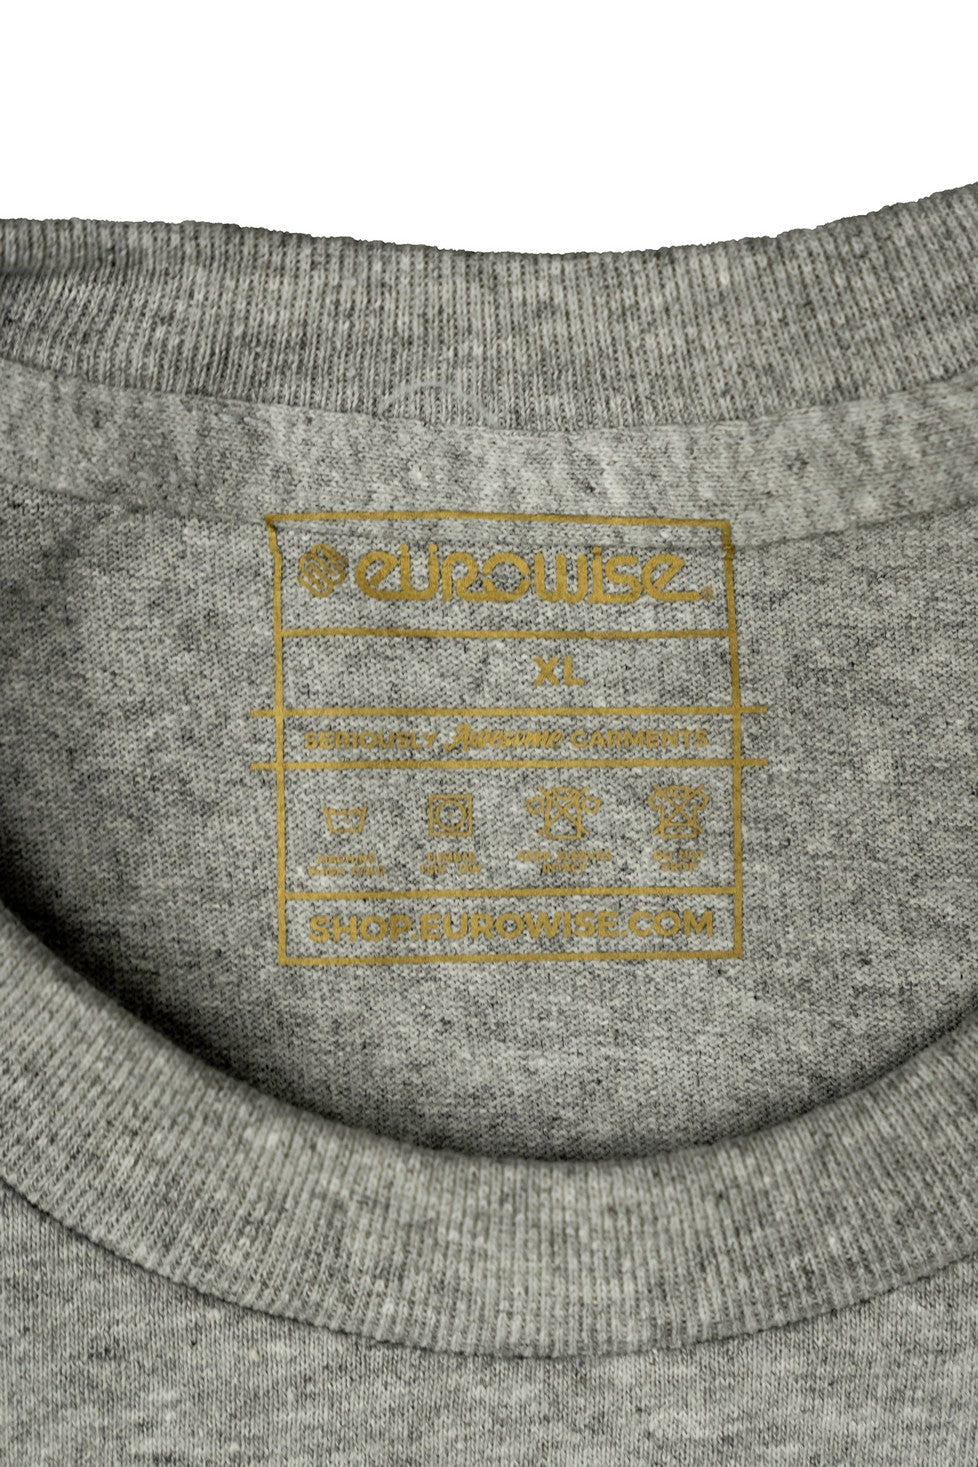 Eurowise Hartt Pocket Tee Shirt: Grey